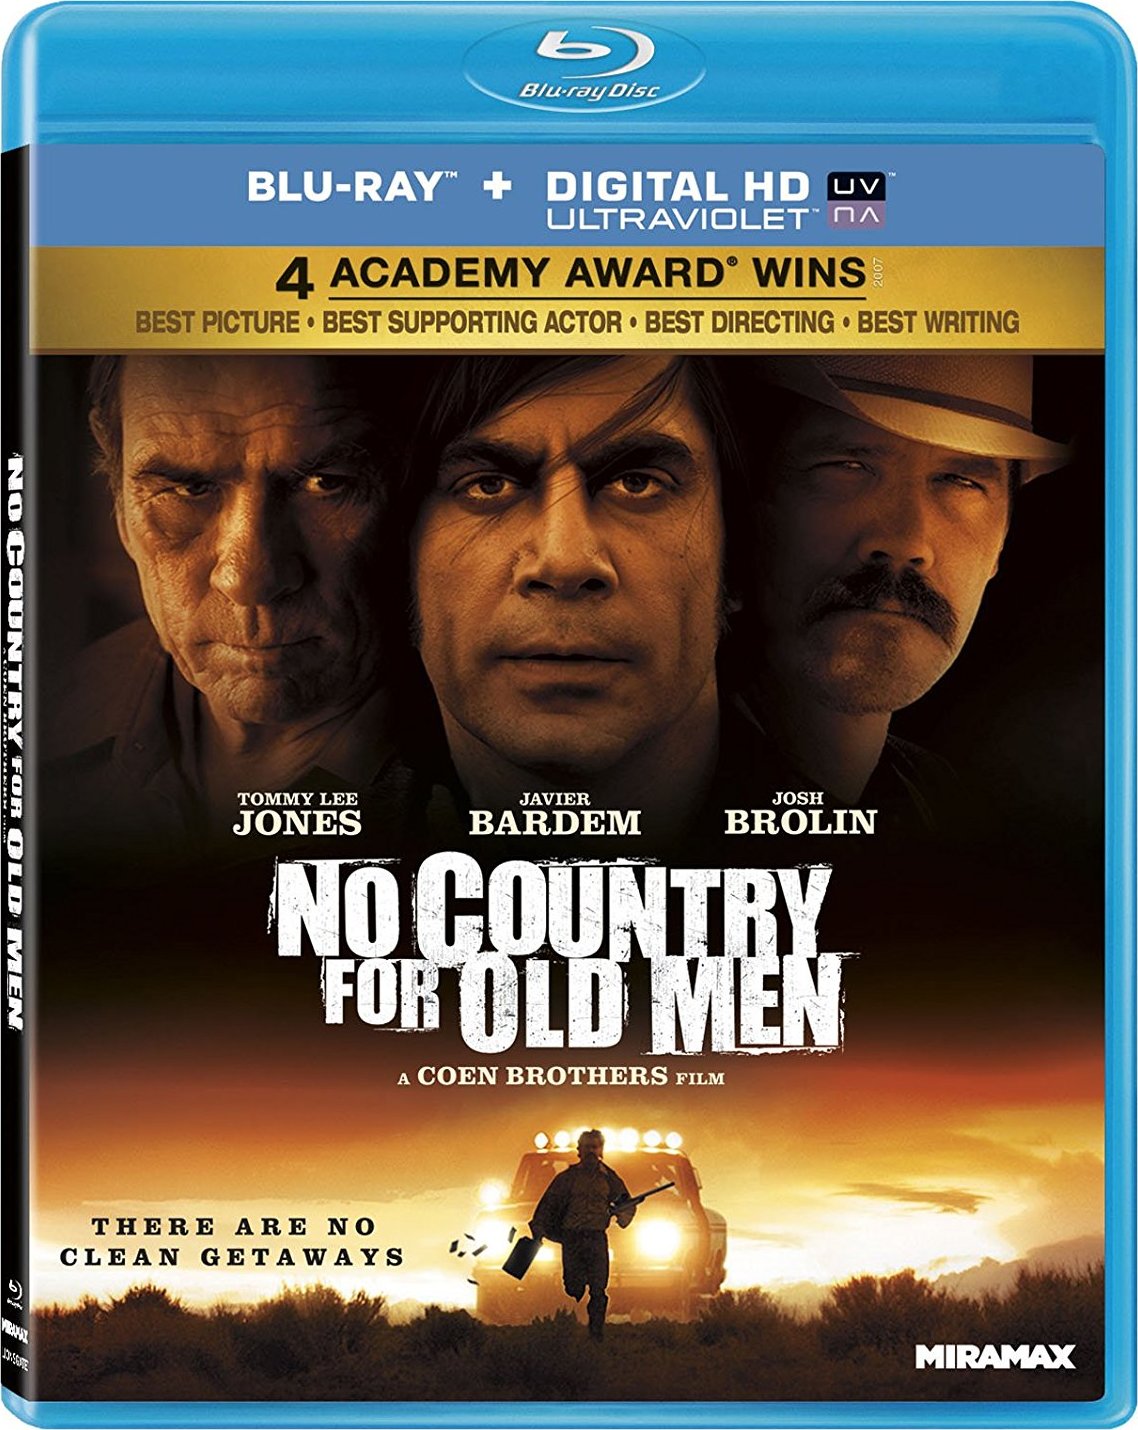 [老无所依].No.Country.for.Old.Men.2007.BluRay.1080p.AVC.LPCM.5.1-TTG   31.56G-1.jpg